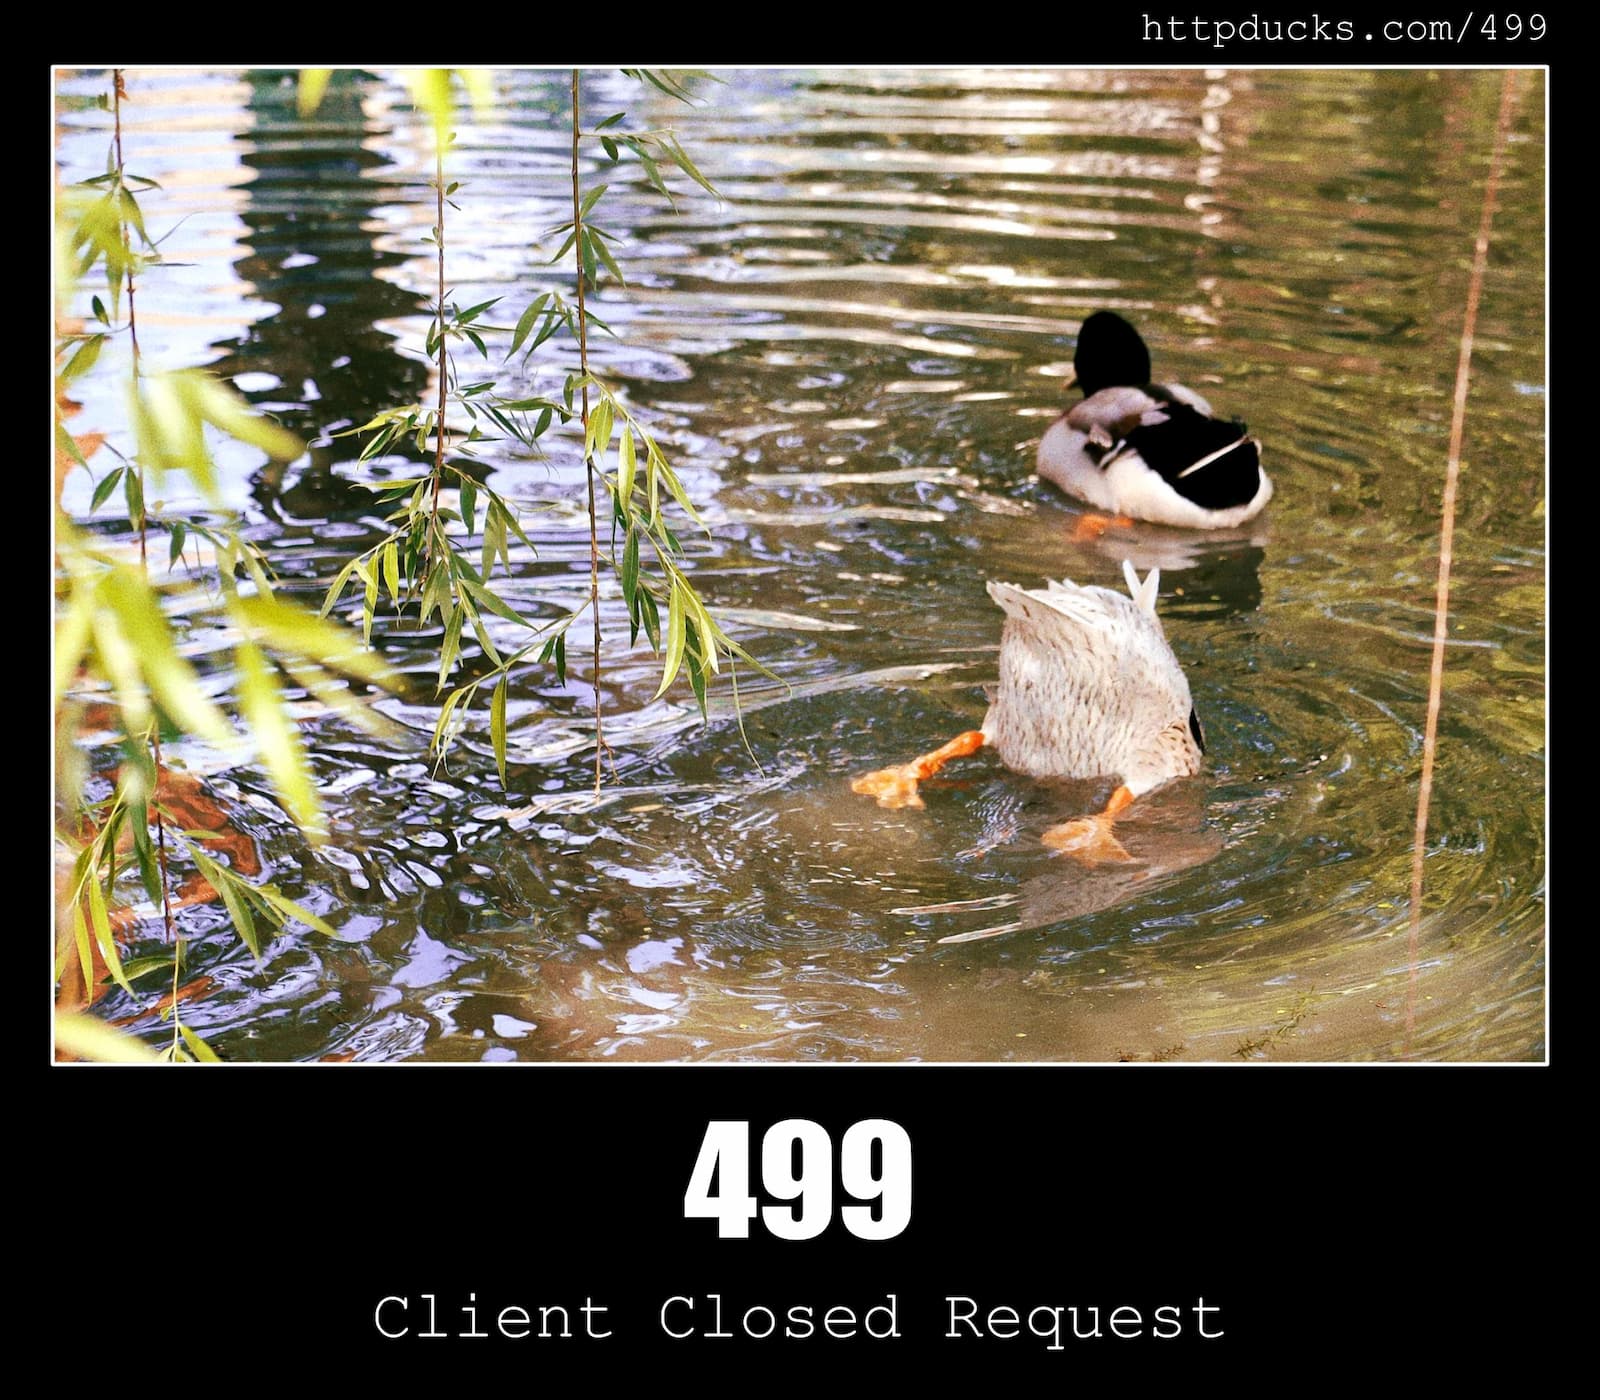 HTTP Status Code 499 Client Closed Request & Ducks